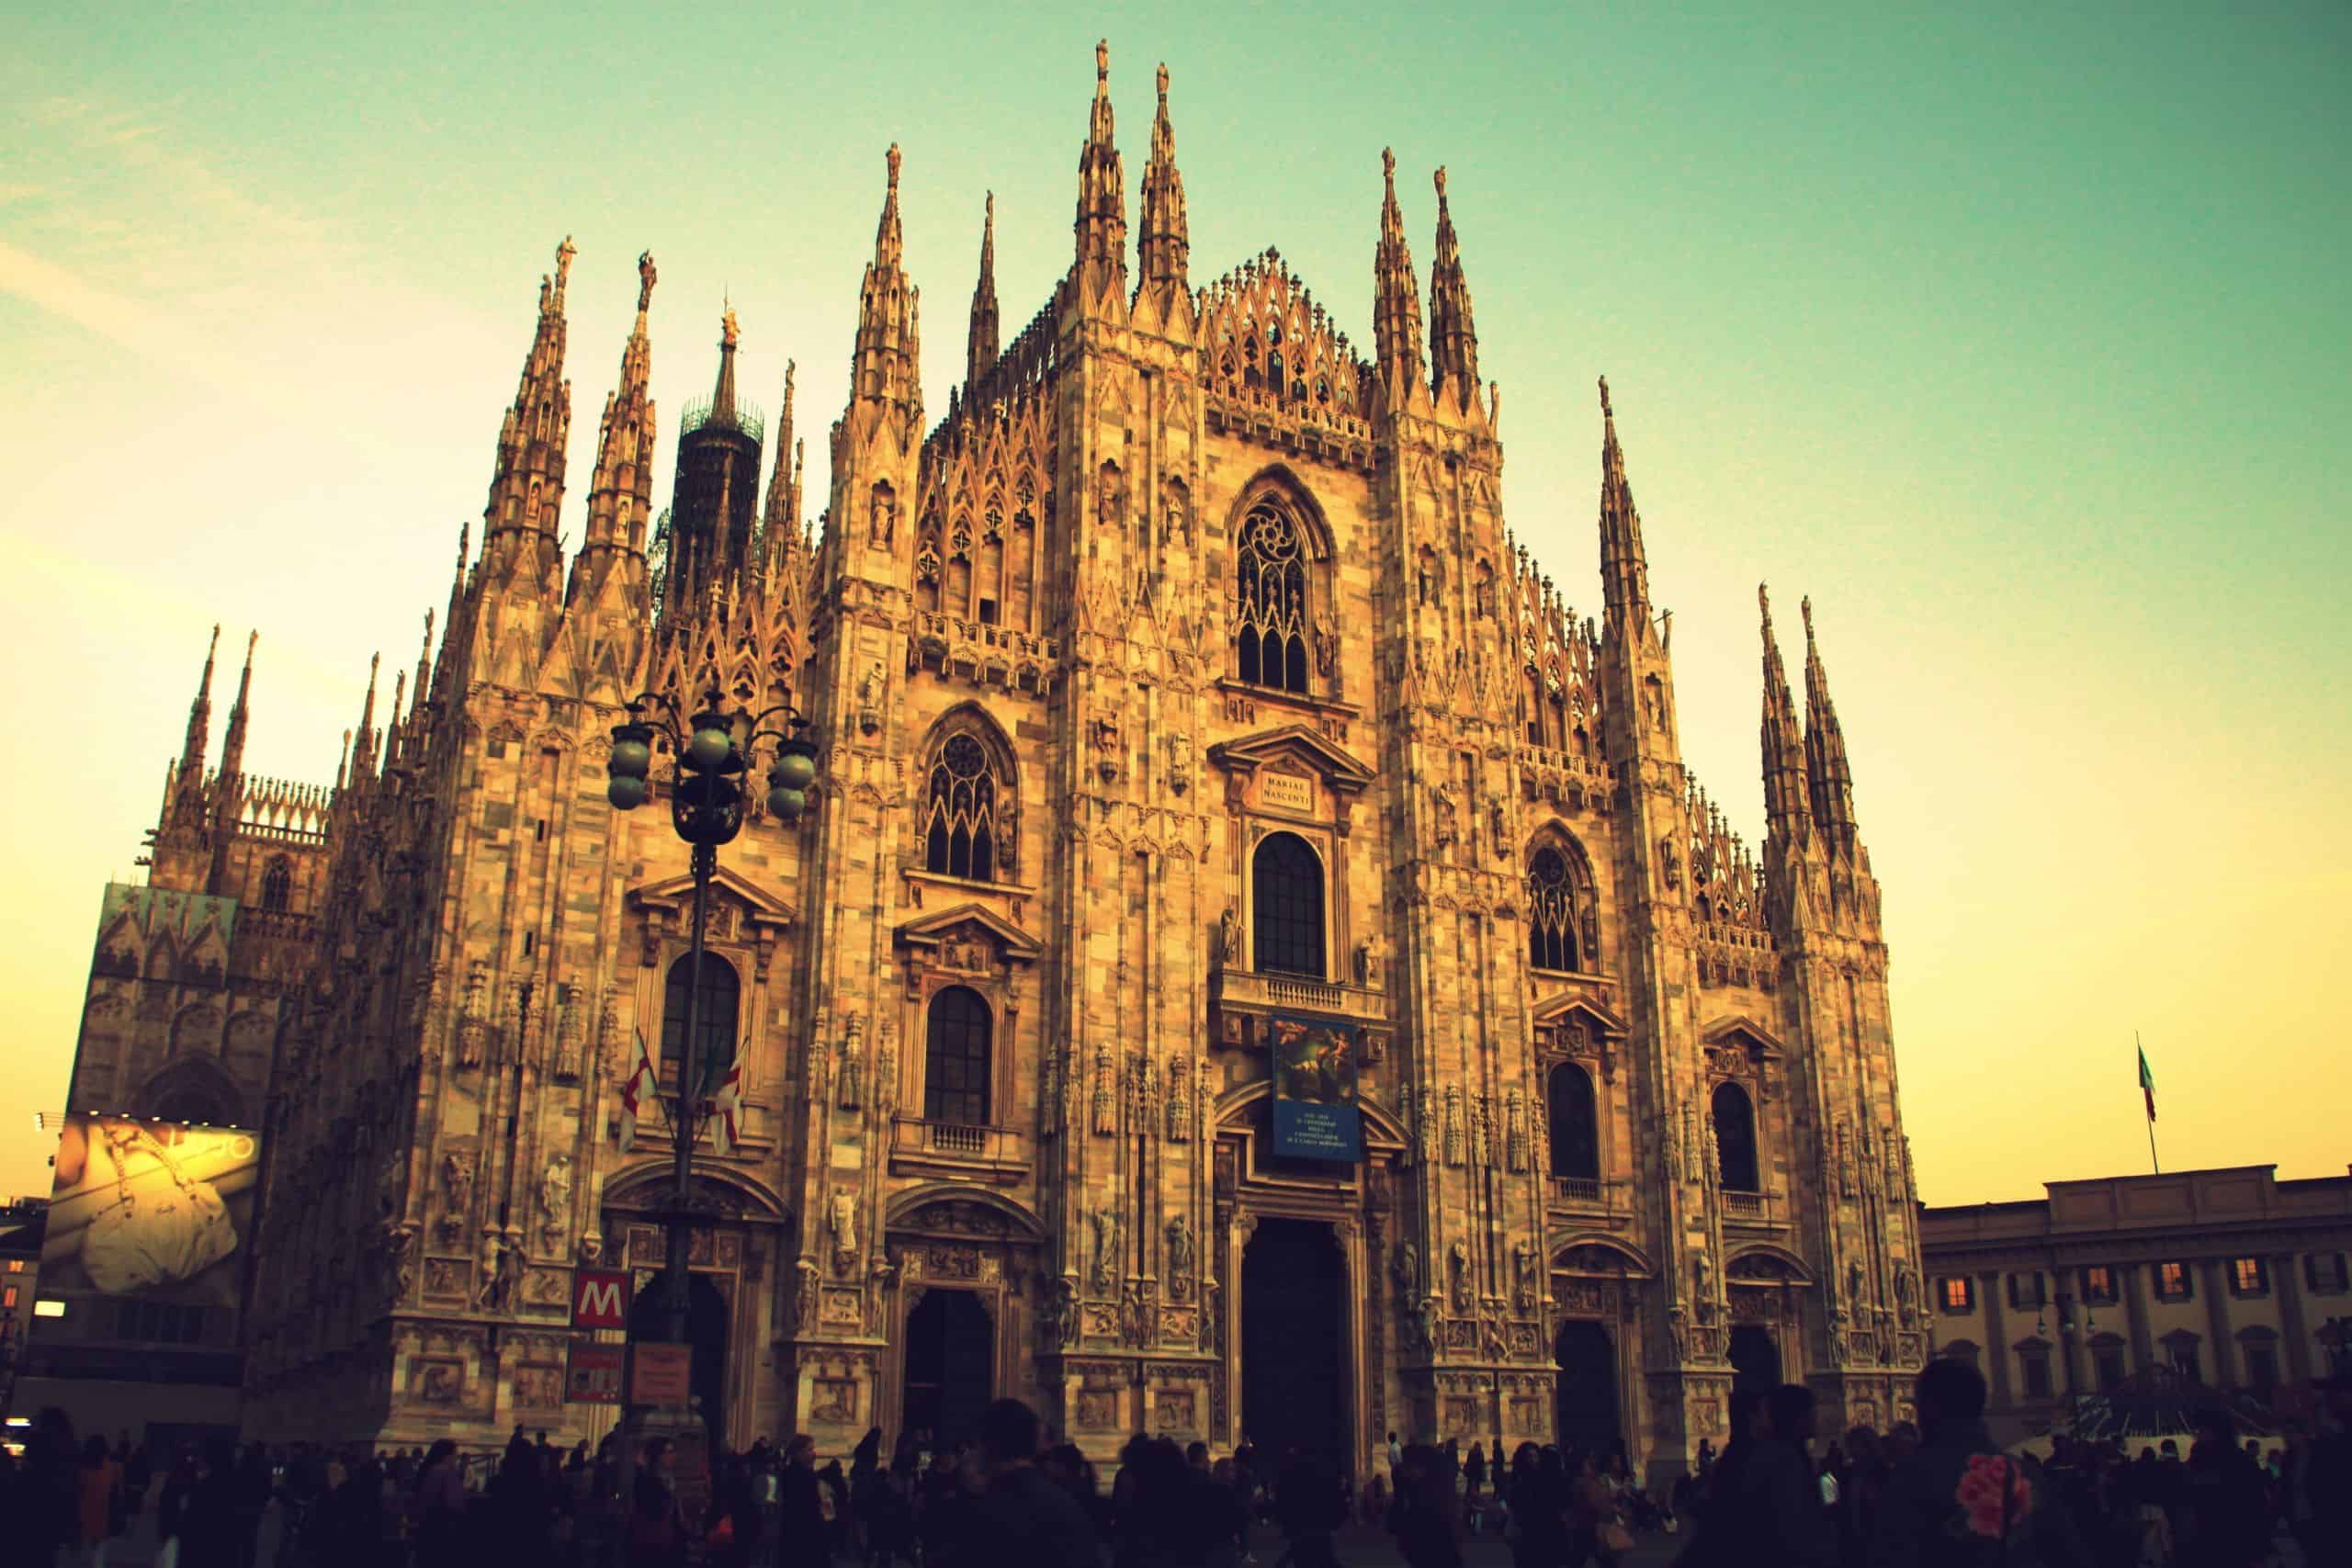 Day 2: Milan